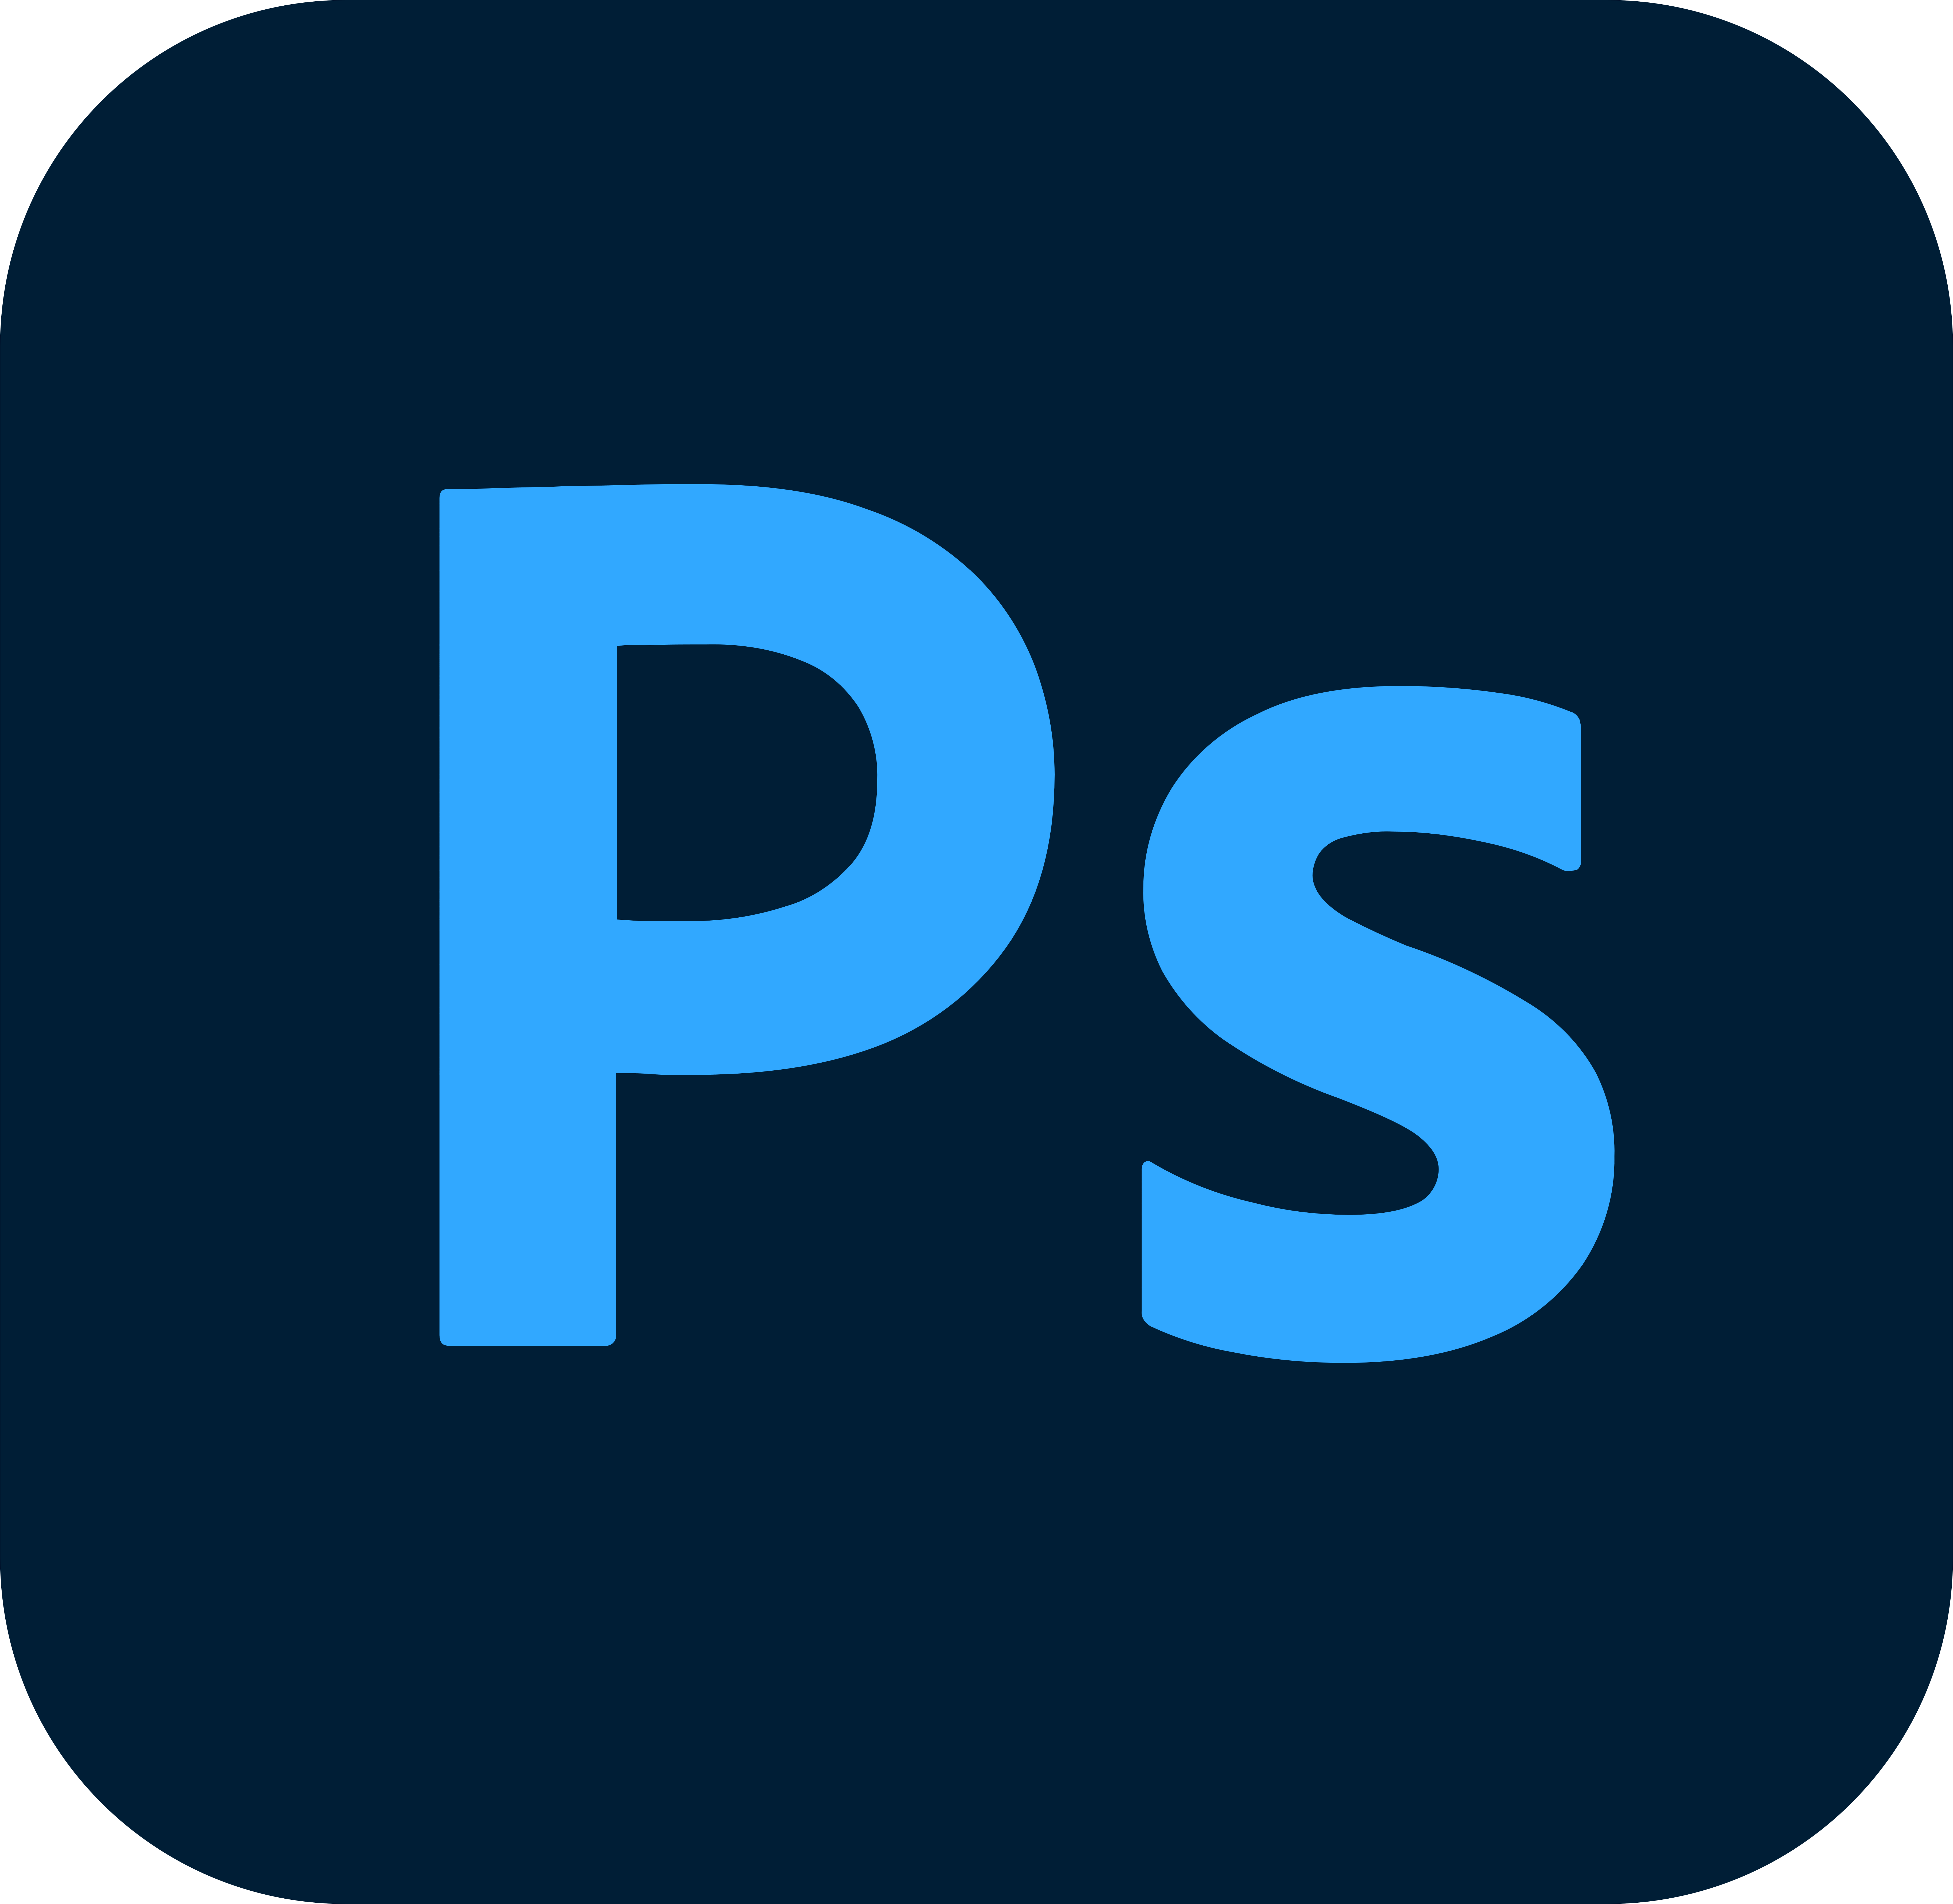 Adobe svg. Значок фотошопа. Adobe Photoshop иконка. Логотип Photoshop. Значок фотошопа без фона.